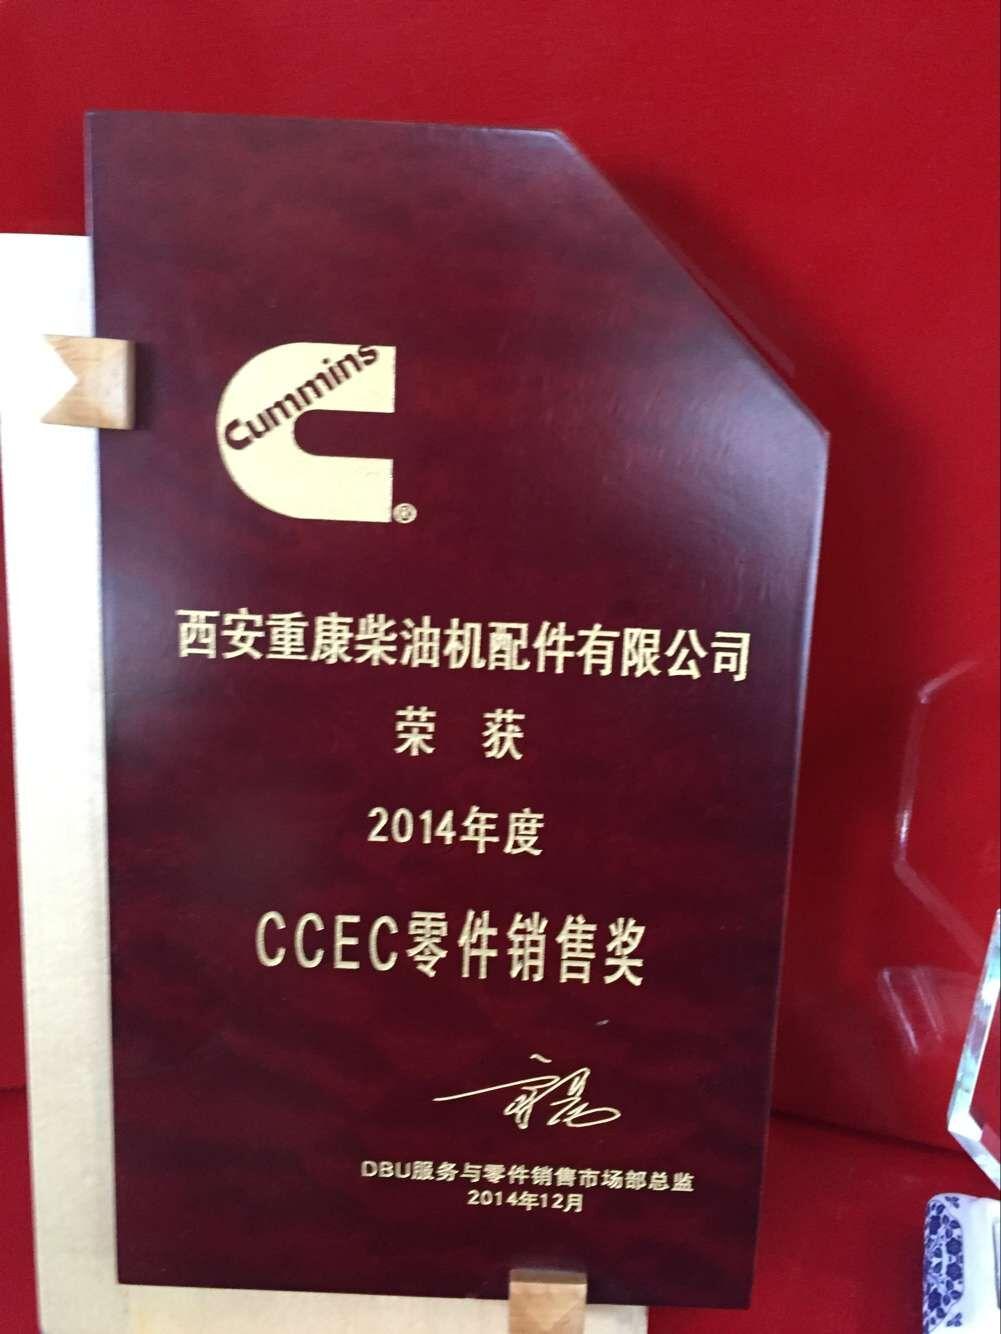 2014年度ccec零件销售奖